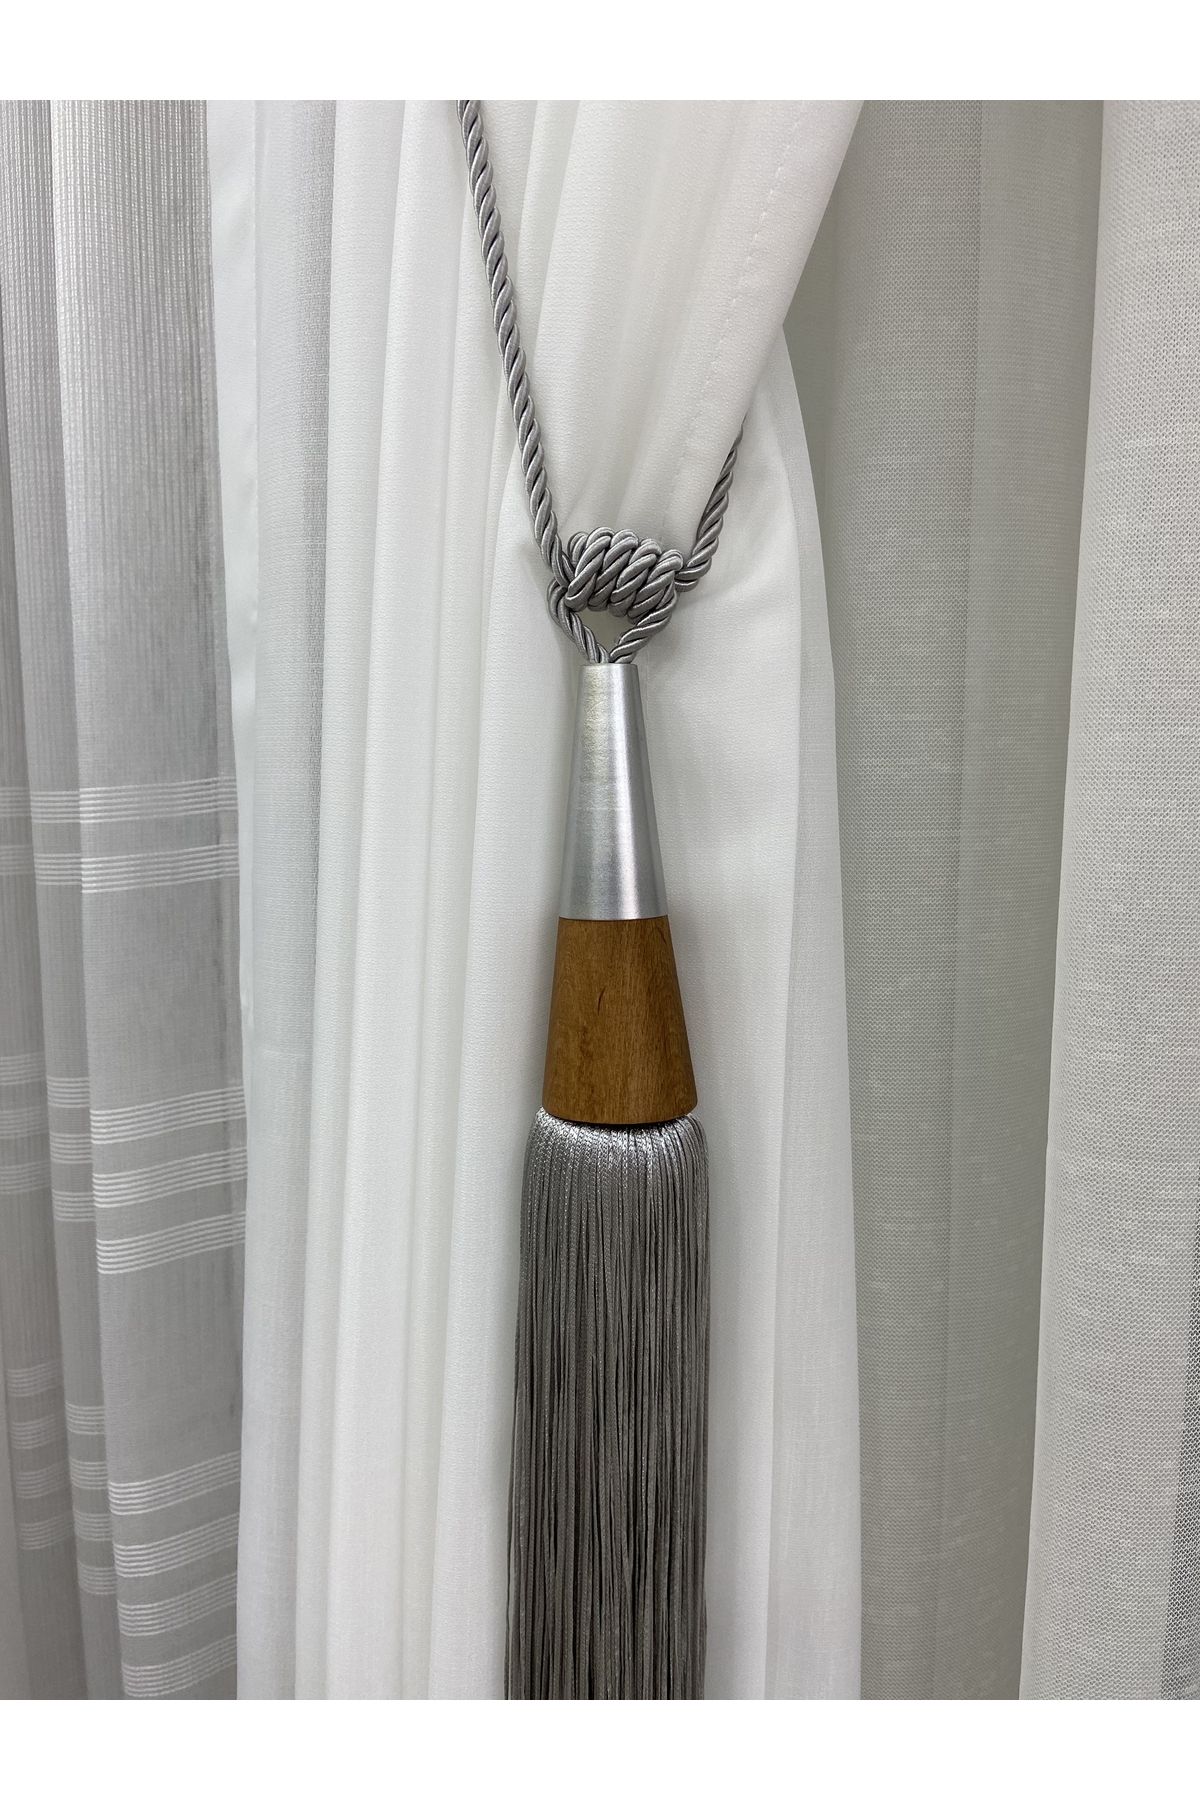 Akcan Açık Gri Renk Gümüş Metal Bambu Uzun Braçol